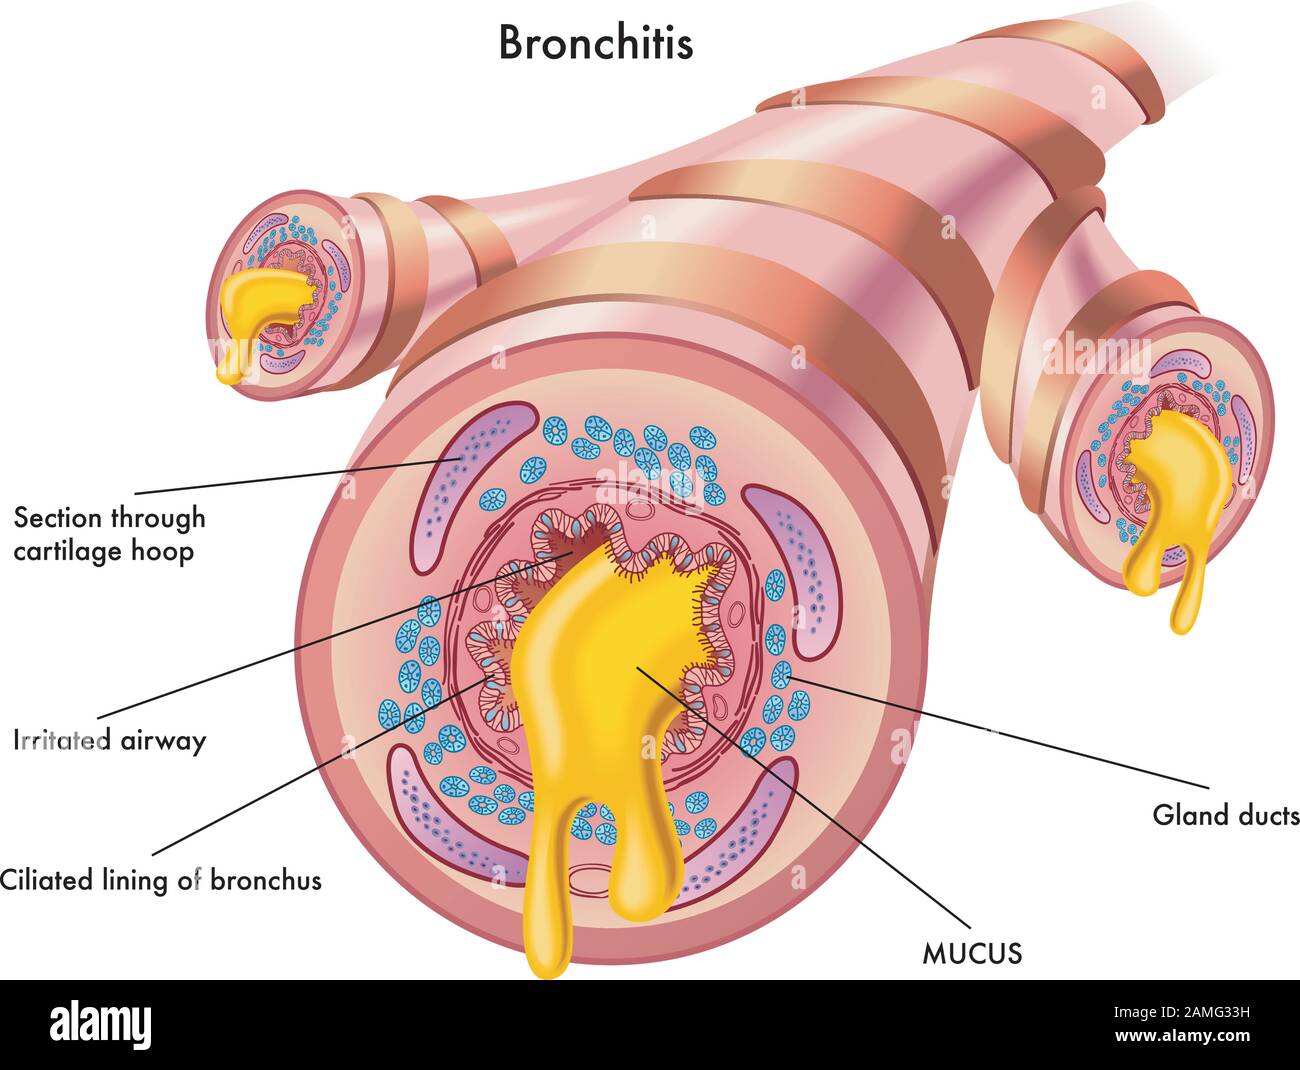 Illustrazione medica degli effetti della bronchite. Illustrazione Vettoriale